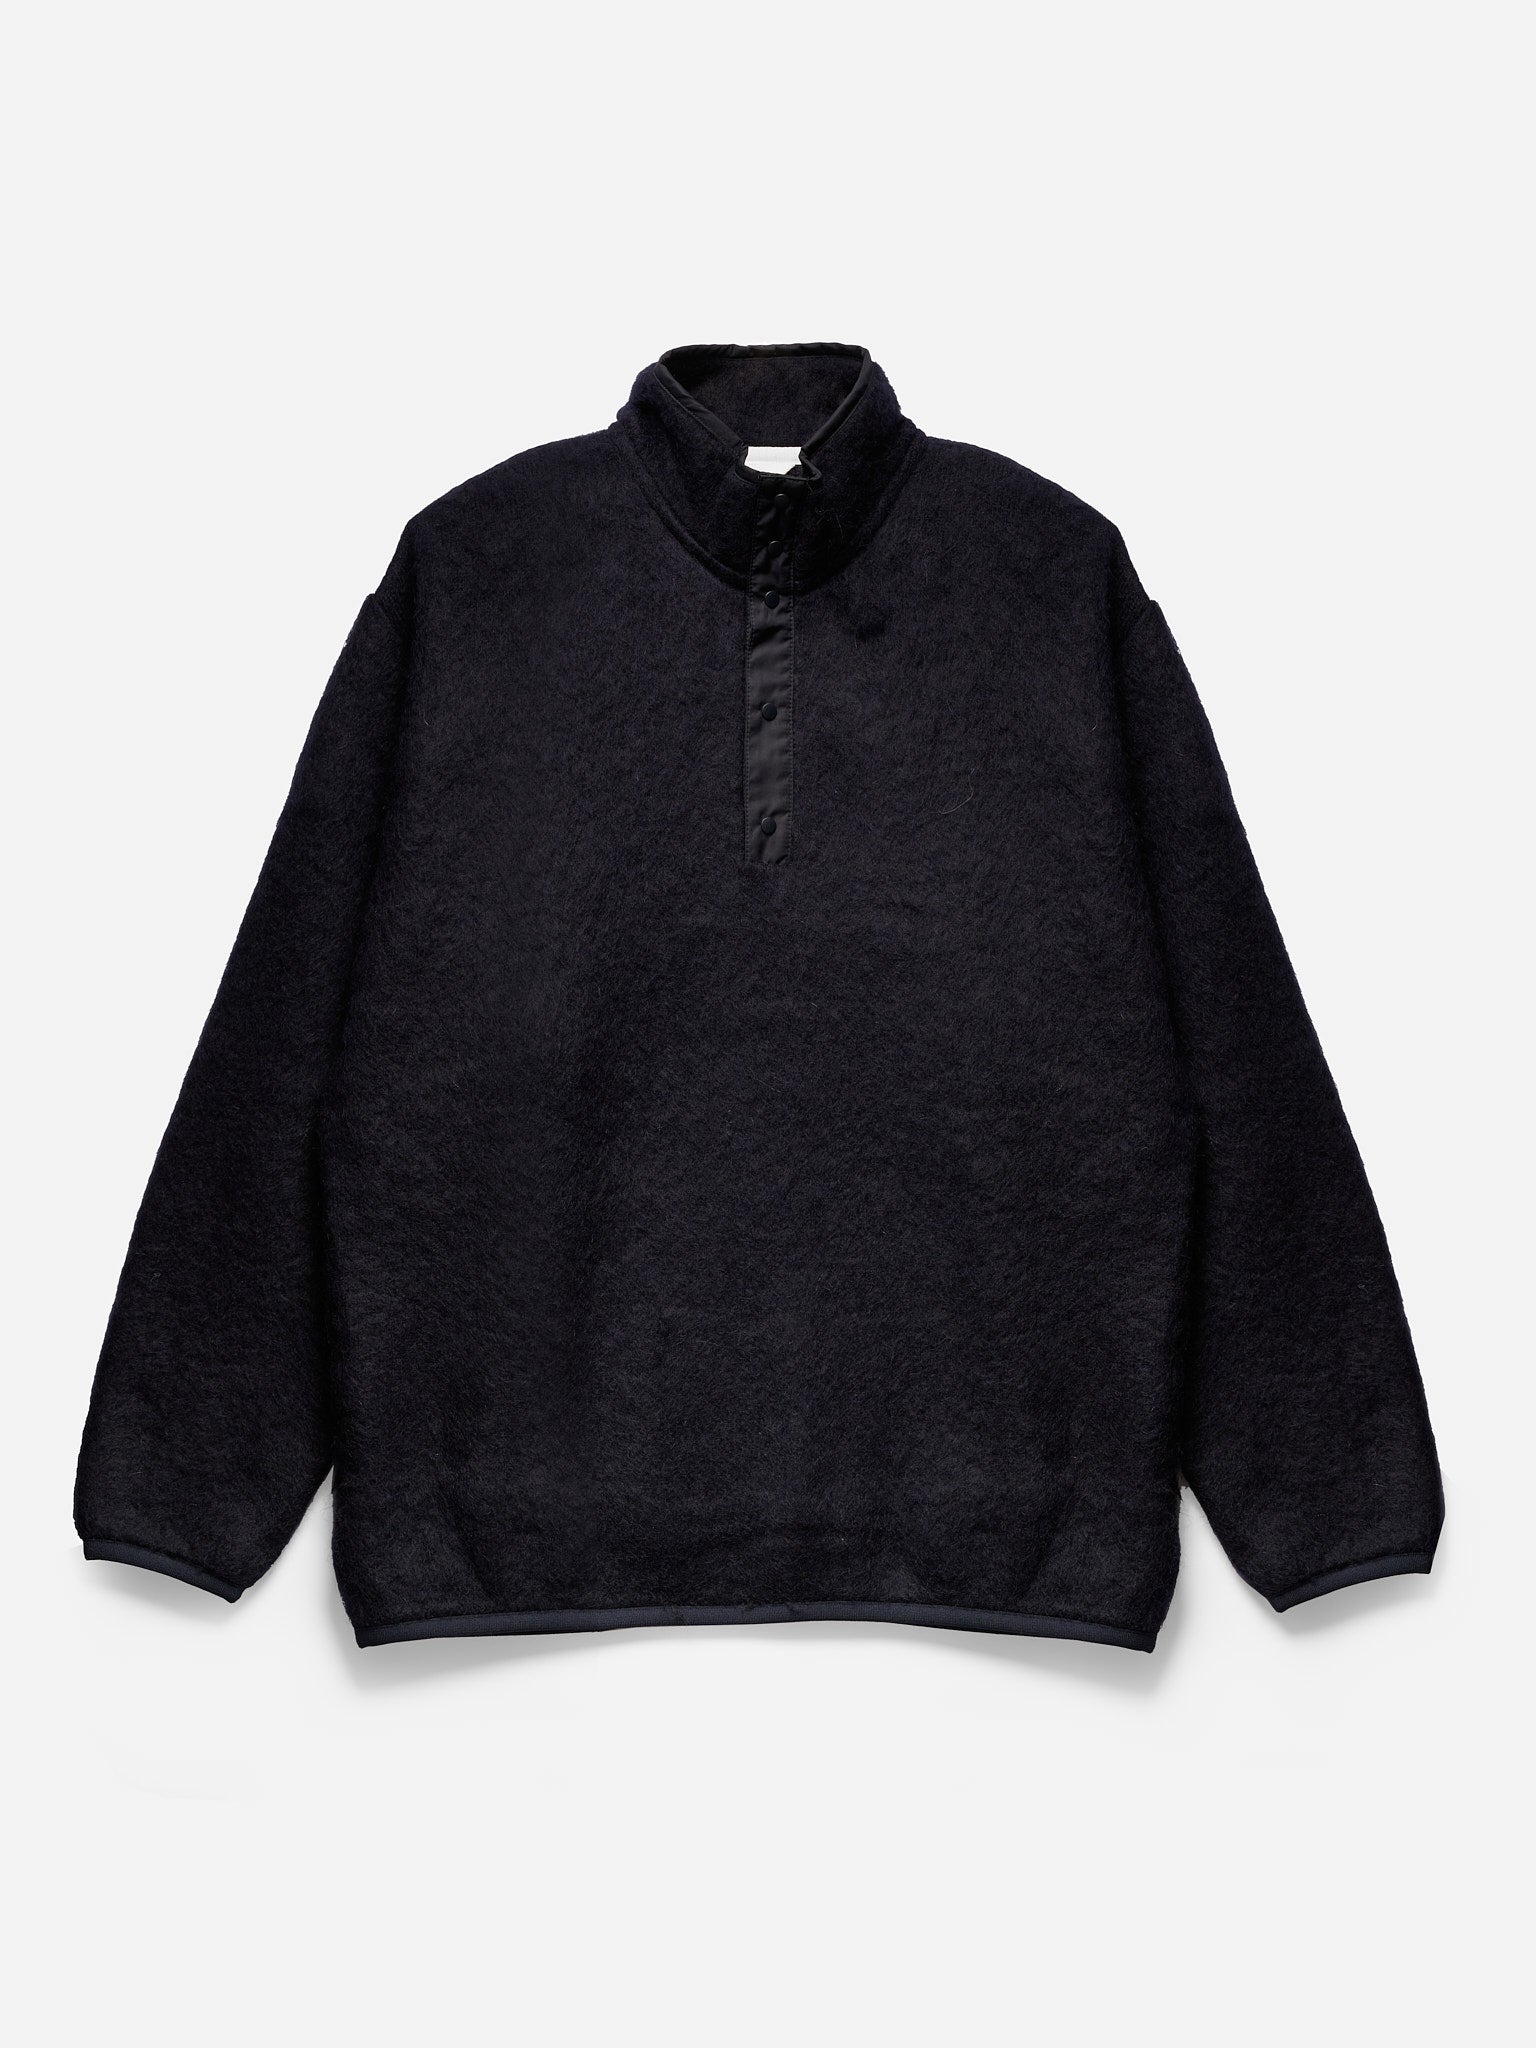 T-ポイント5倍】 XLサイズ nanamica Sweater Pullover トップス 